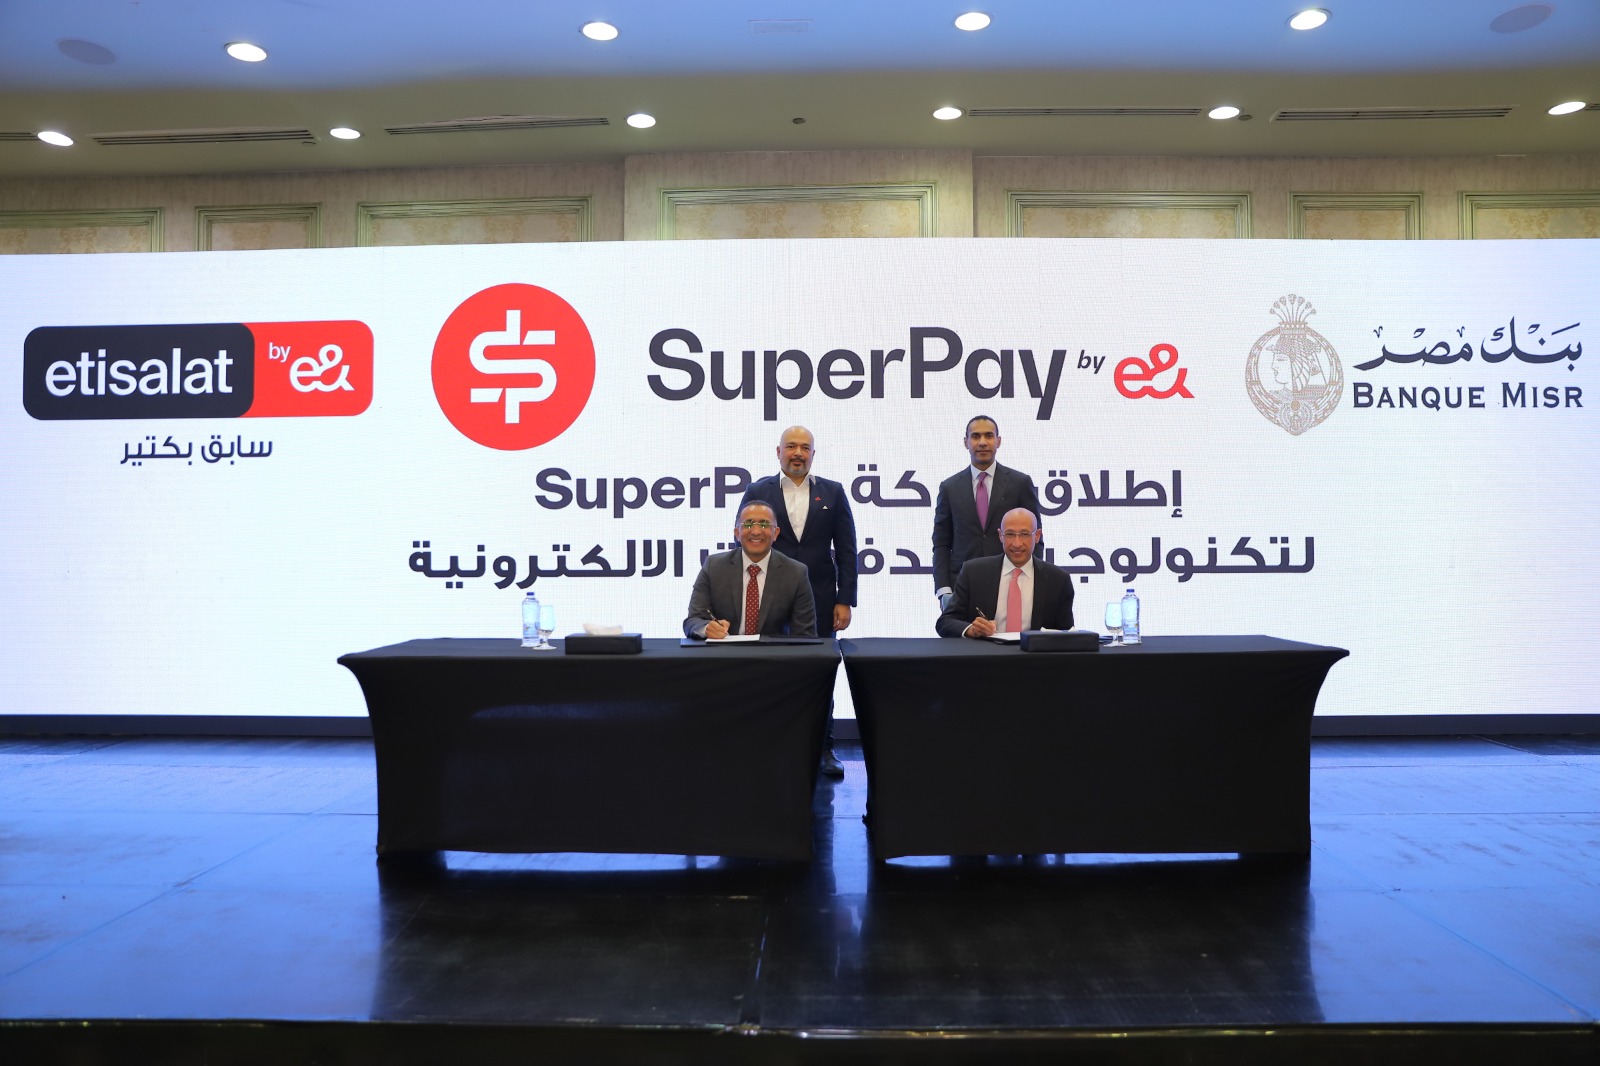 بنك مصر واتصالات من &e في مصر يطلقان SuperPay لتكنولوجيا المدفوعات الإلكترونية